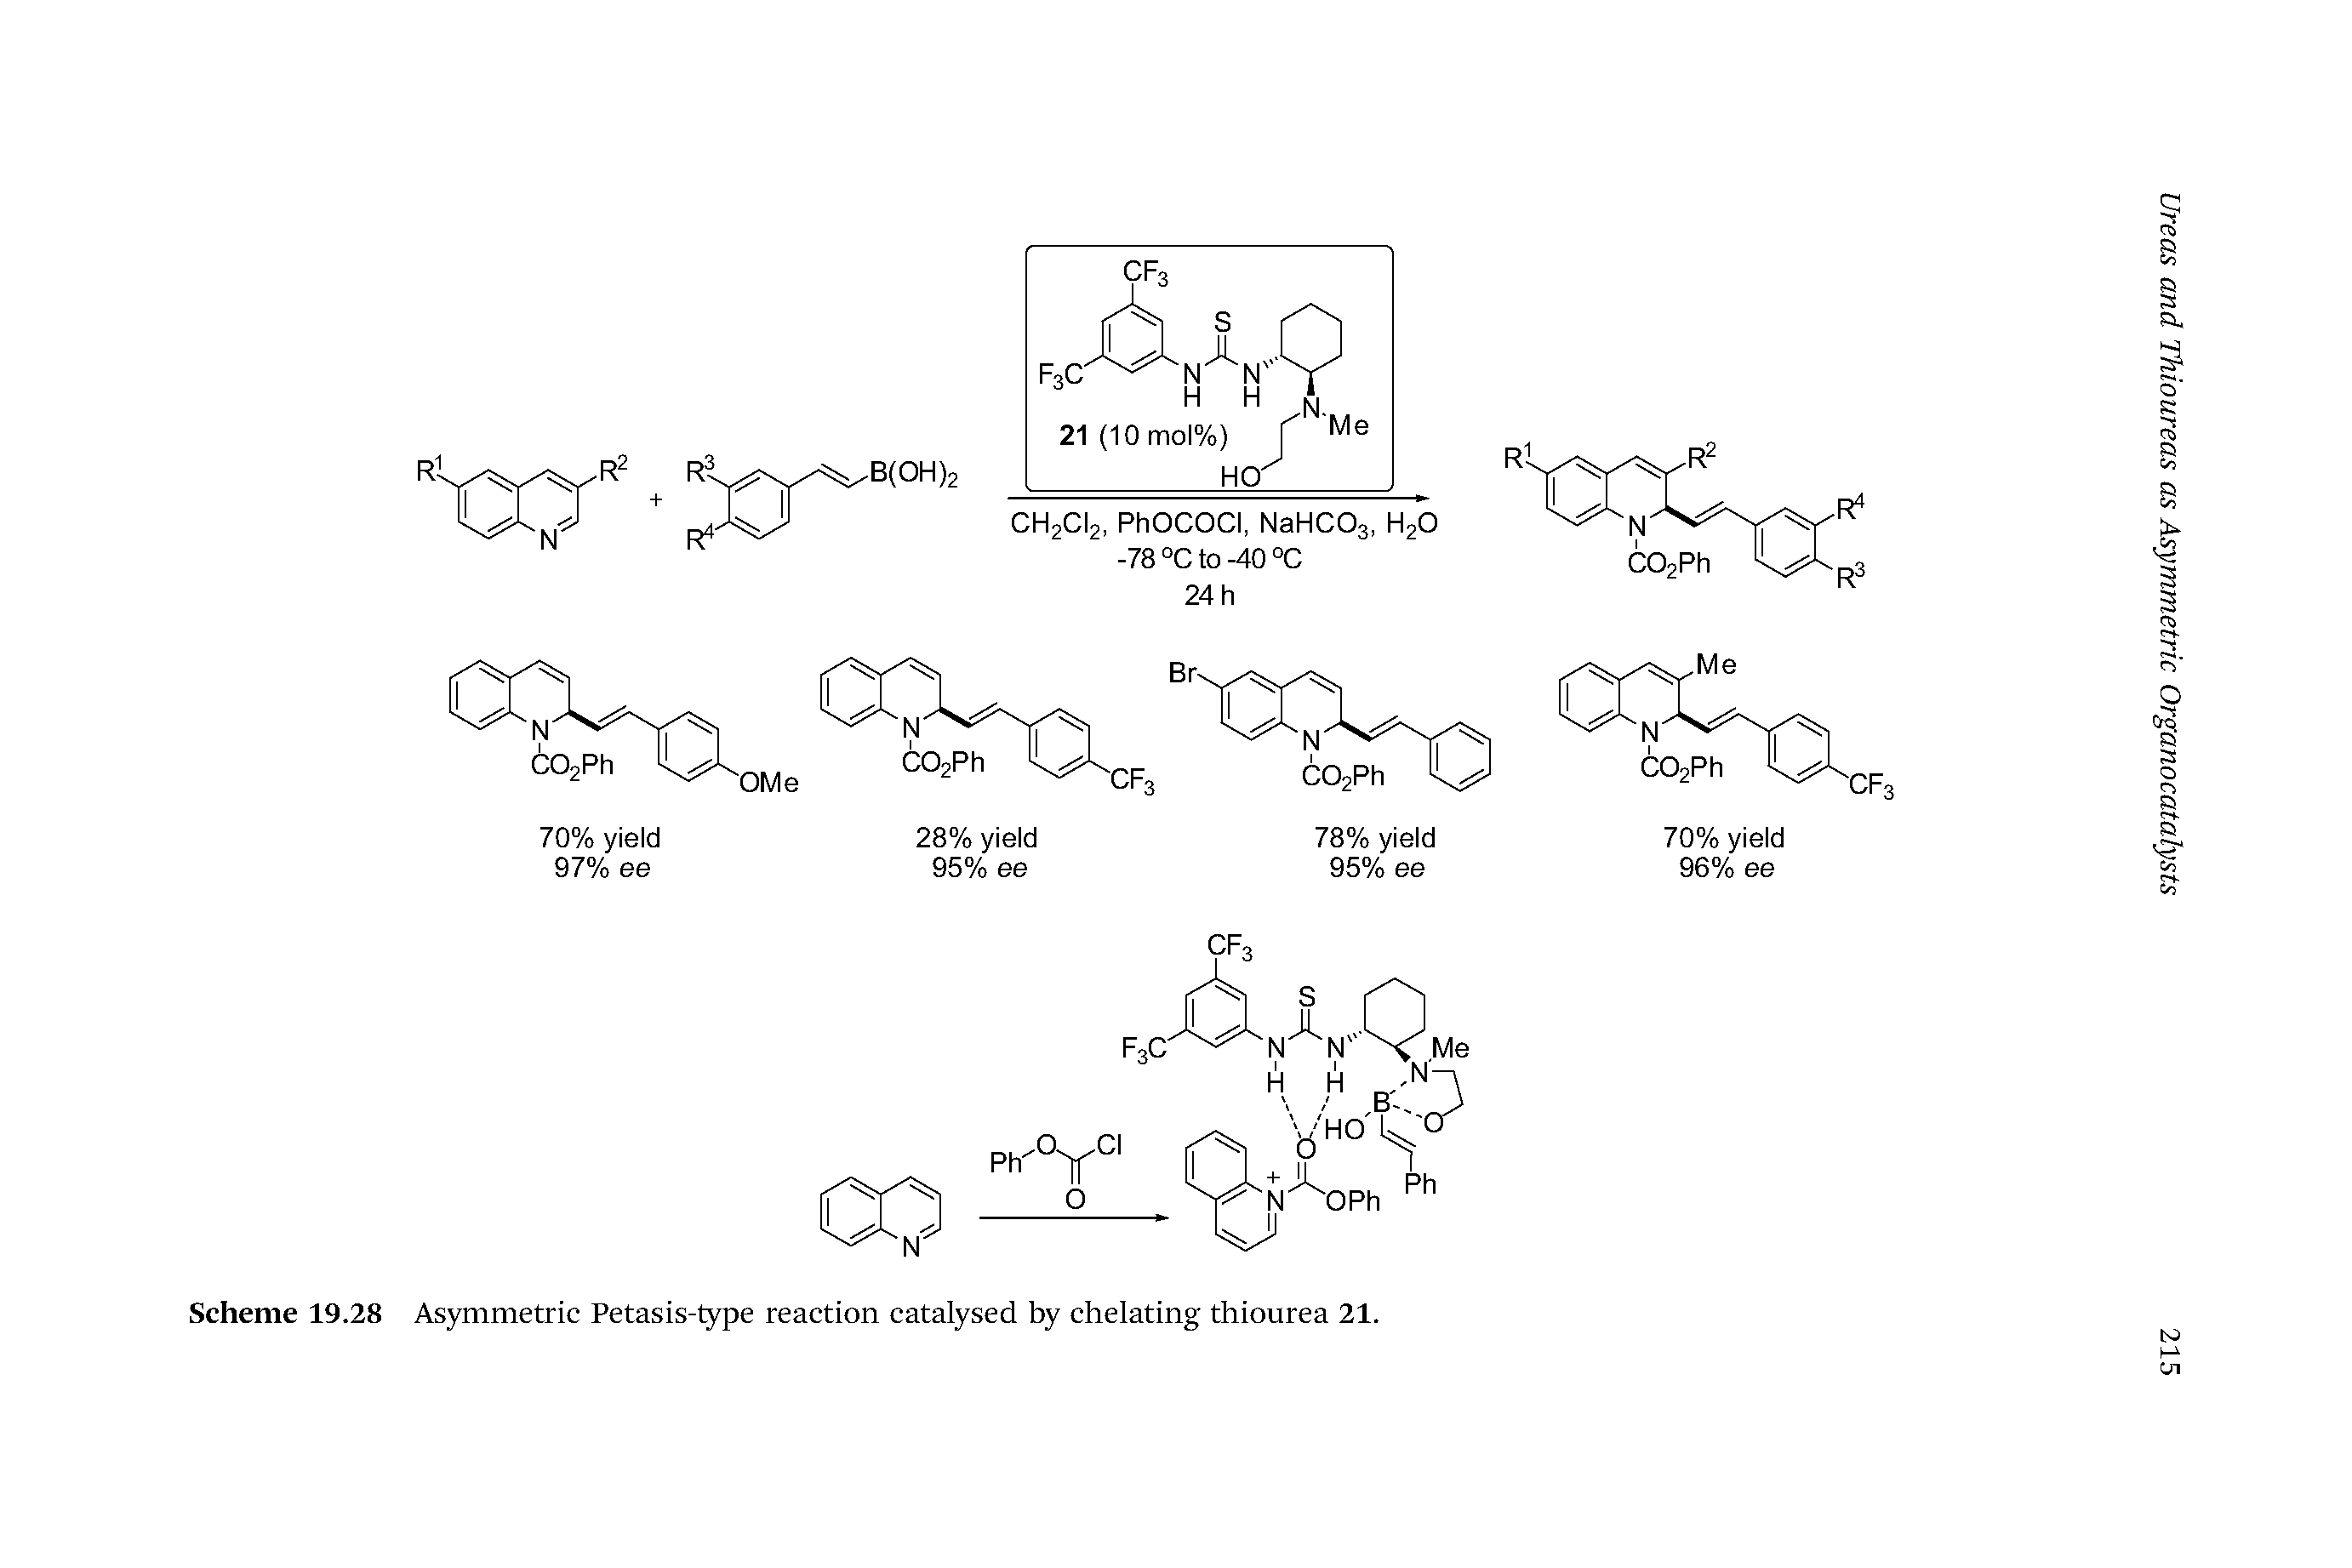 Scheme 19.28 Asymmetric Petasis-type reaction catalysed by chelating thiourea 21.